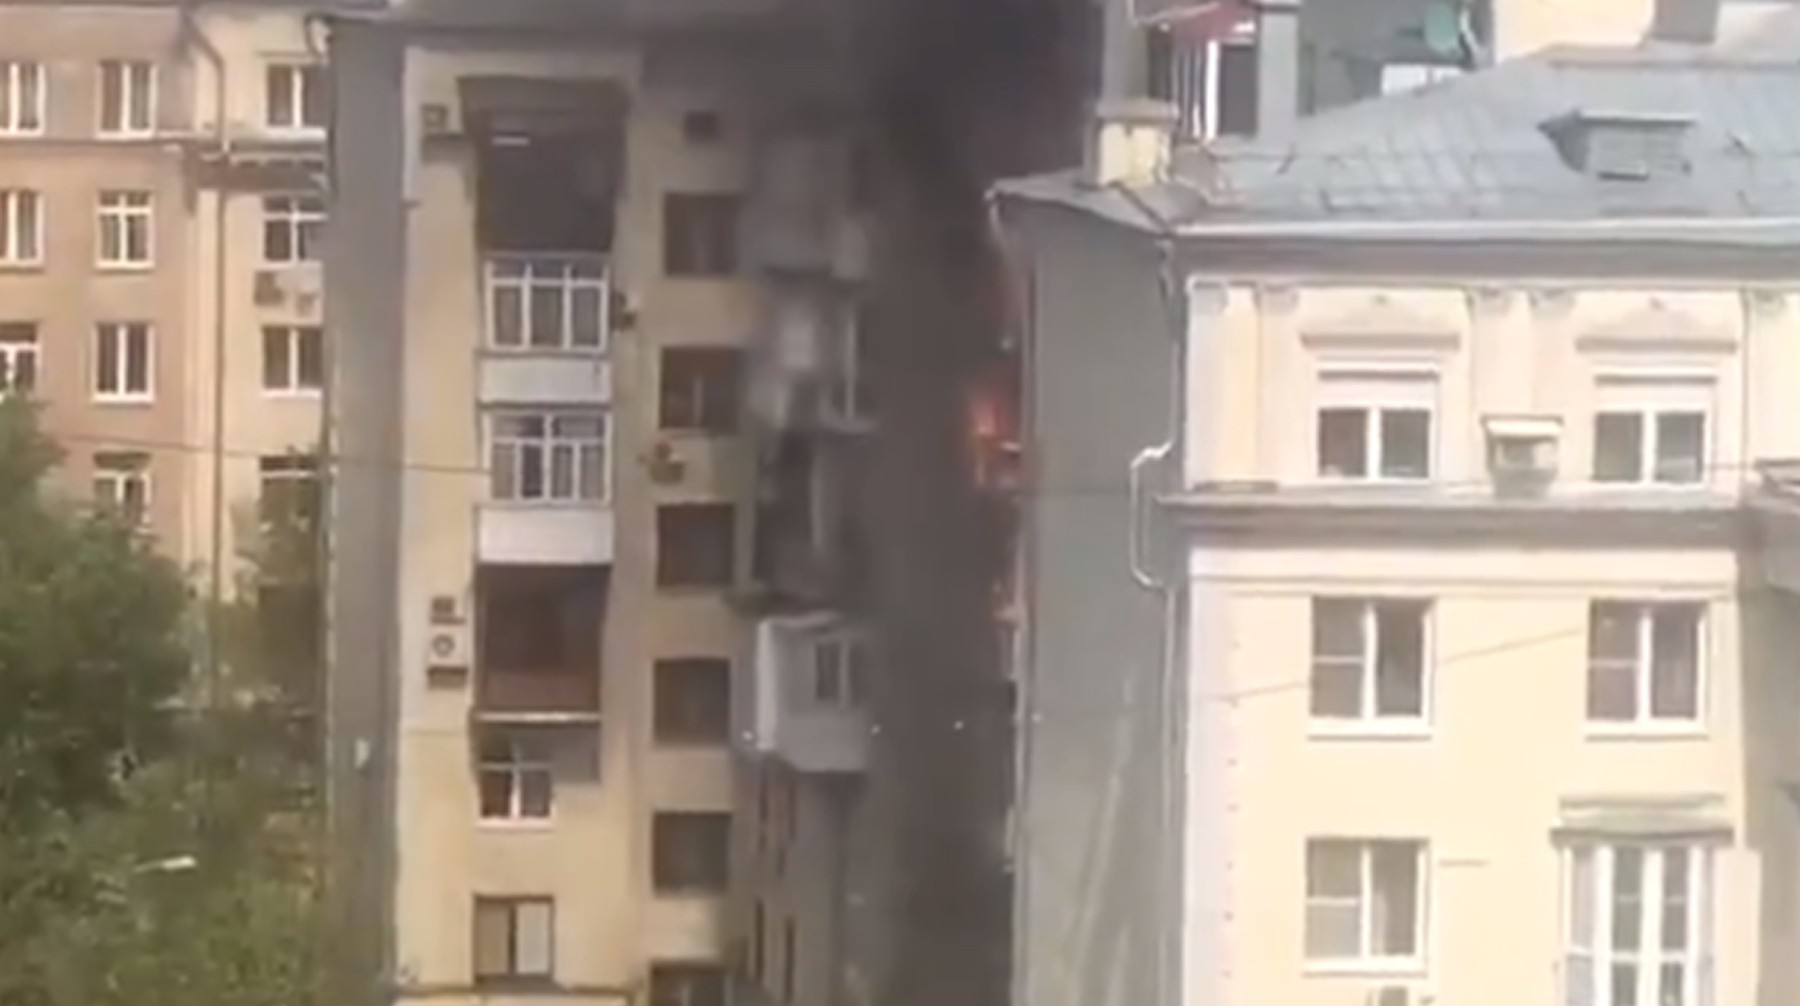 Dailystorm - Один человек погиб при пожаре в жилом доме в центре Москвы